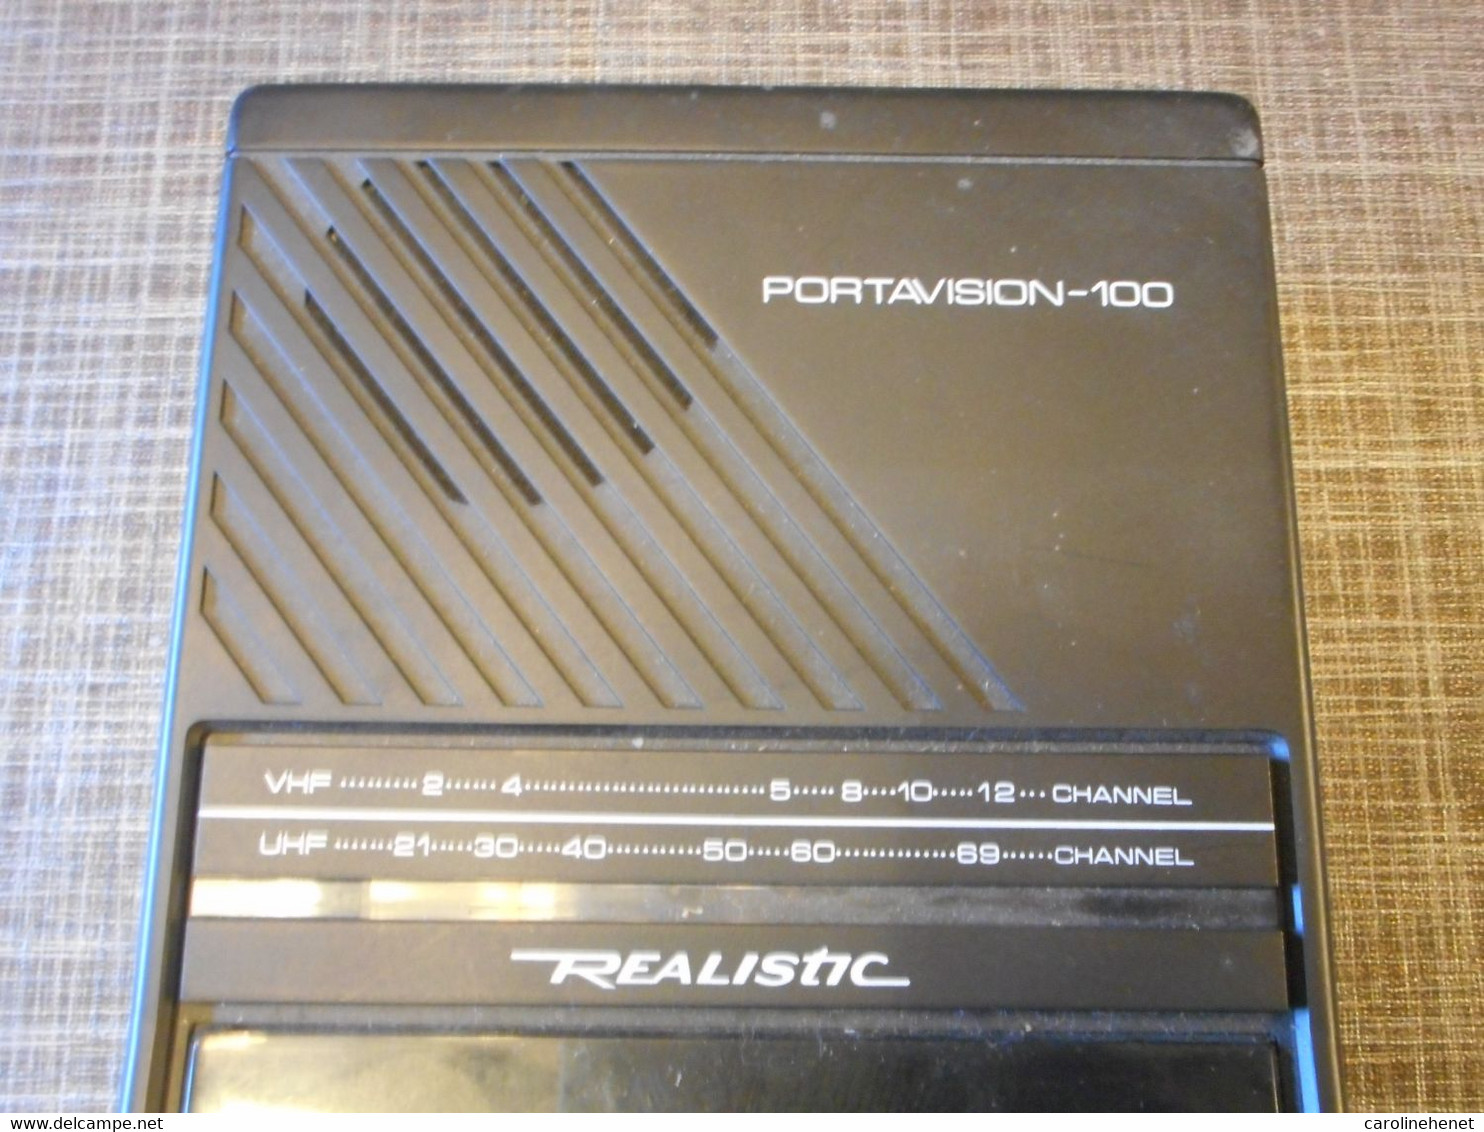 PORTAVISION-100 Realistic - Televisie